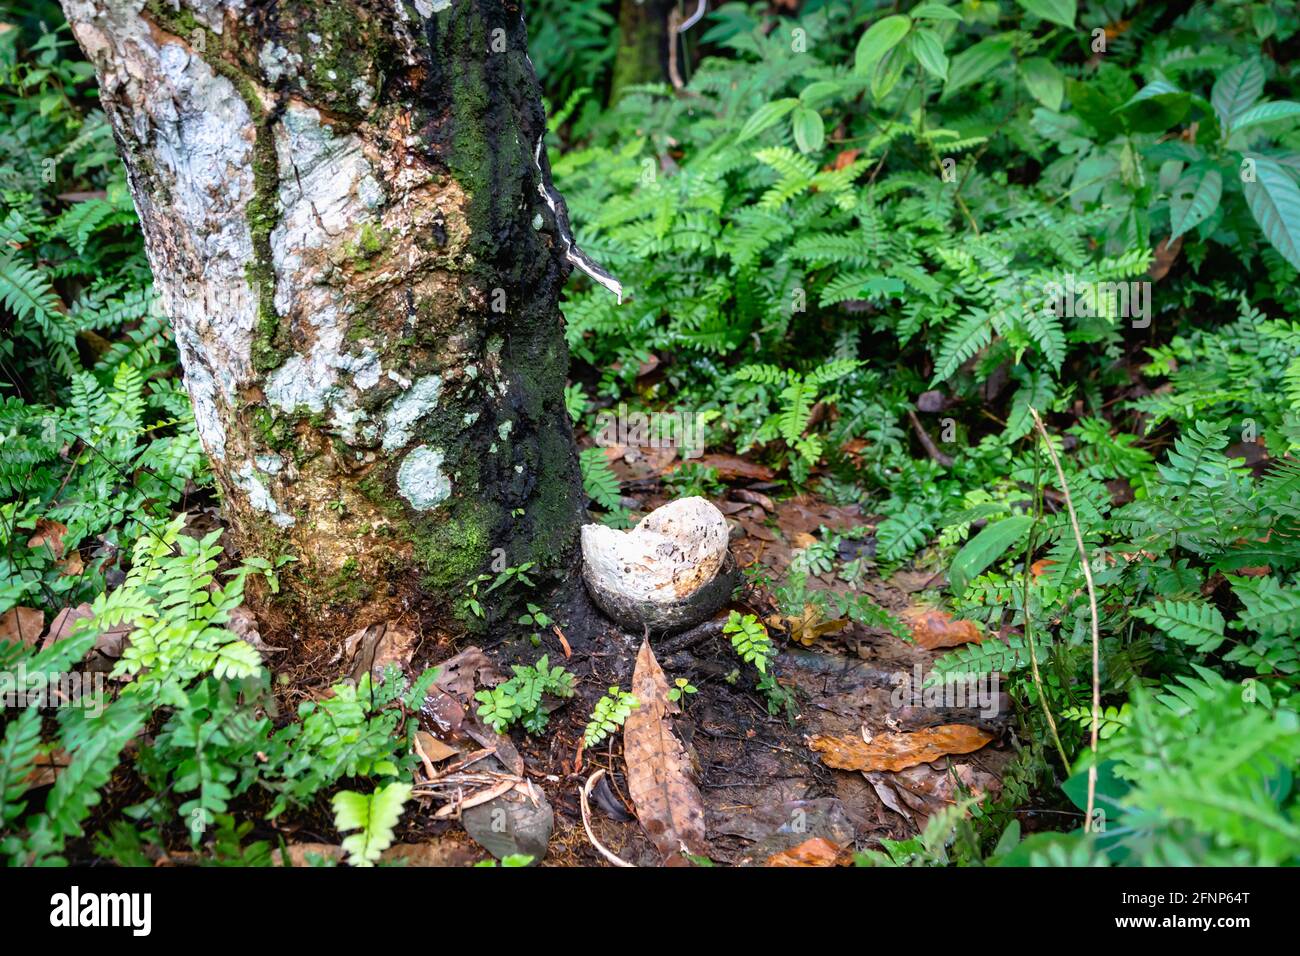 Kautschukbaumplantage, Kautschukklopfen aus der para-Kautschukbaumplanze (Hevea brasiliensis) im Regenwald Indonesiens. Naturlatex-Rohstoff-Extrakt Stockfoto